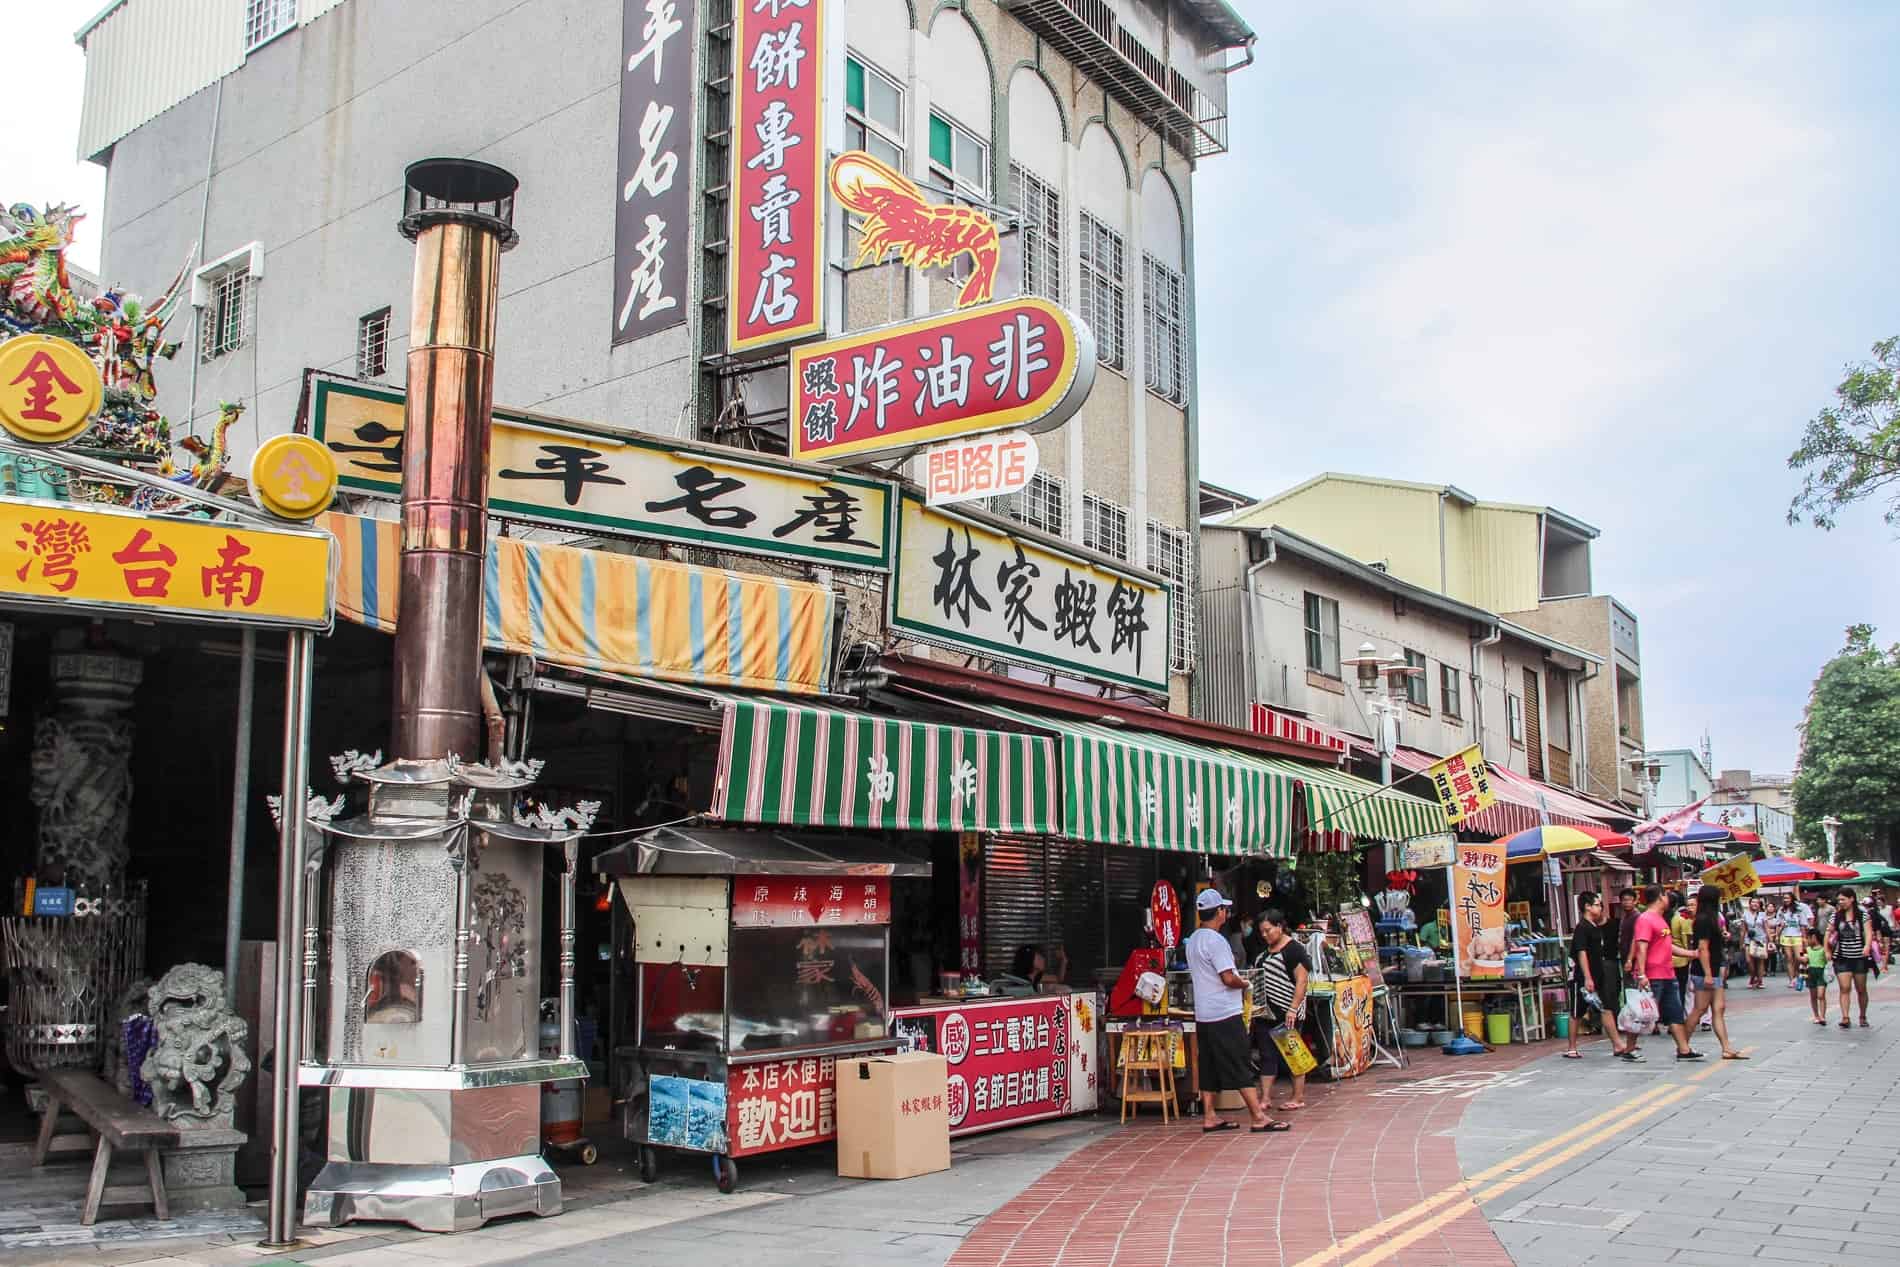 Gente en una calle llena de tiendas y vendedores ambulantes de comida en el centro de la ciudad de Tainan. 